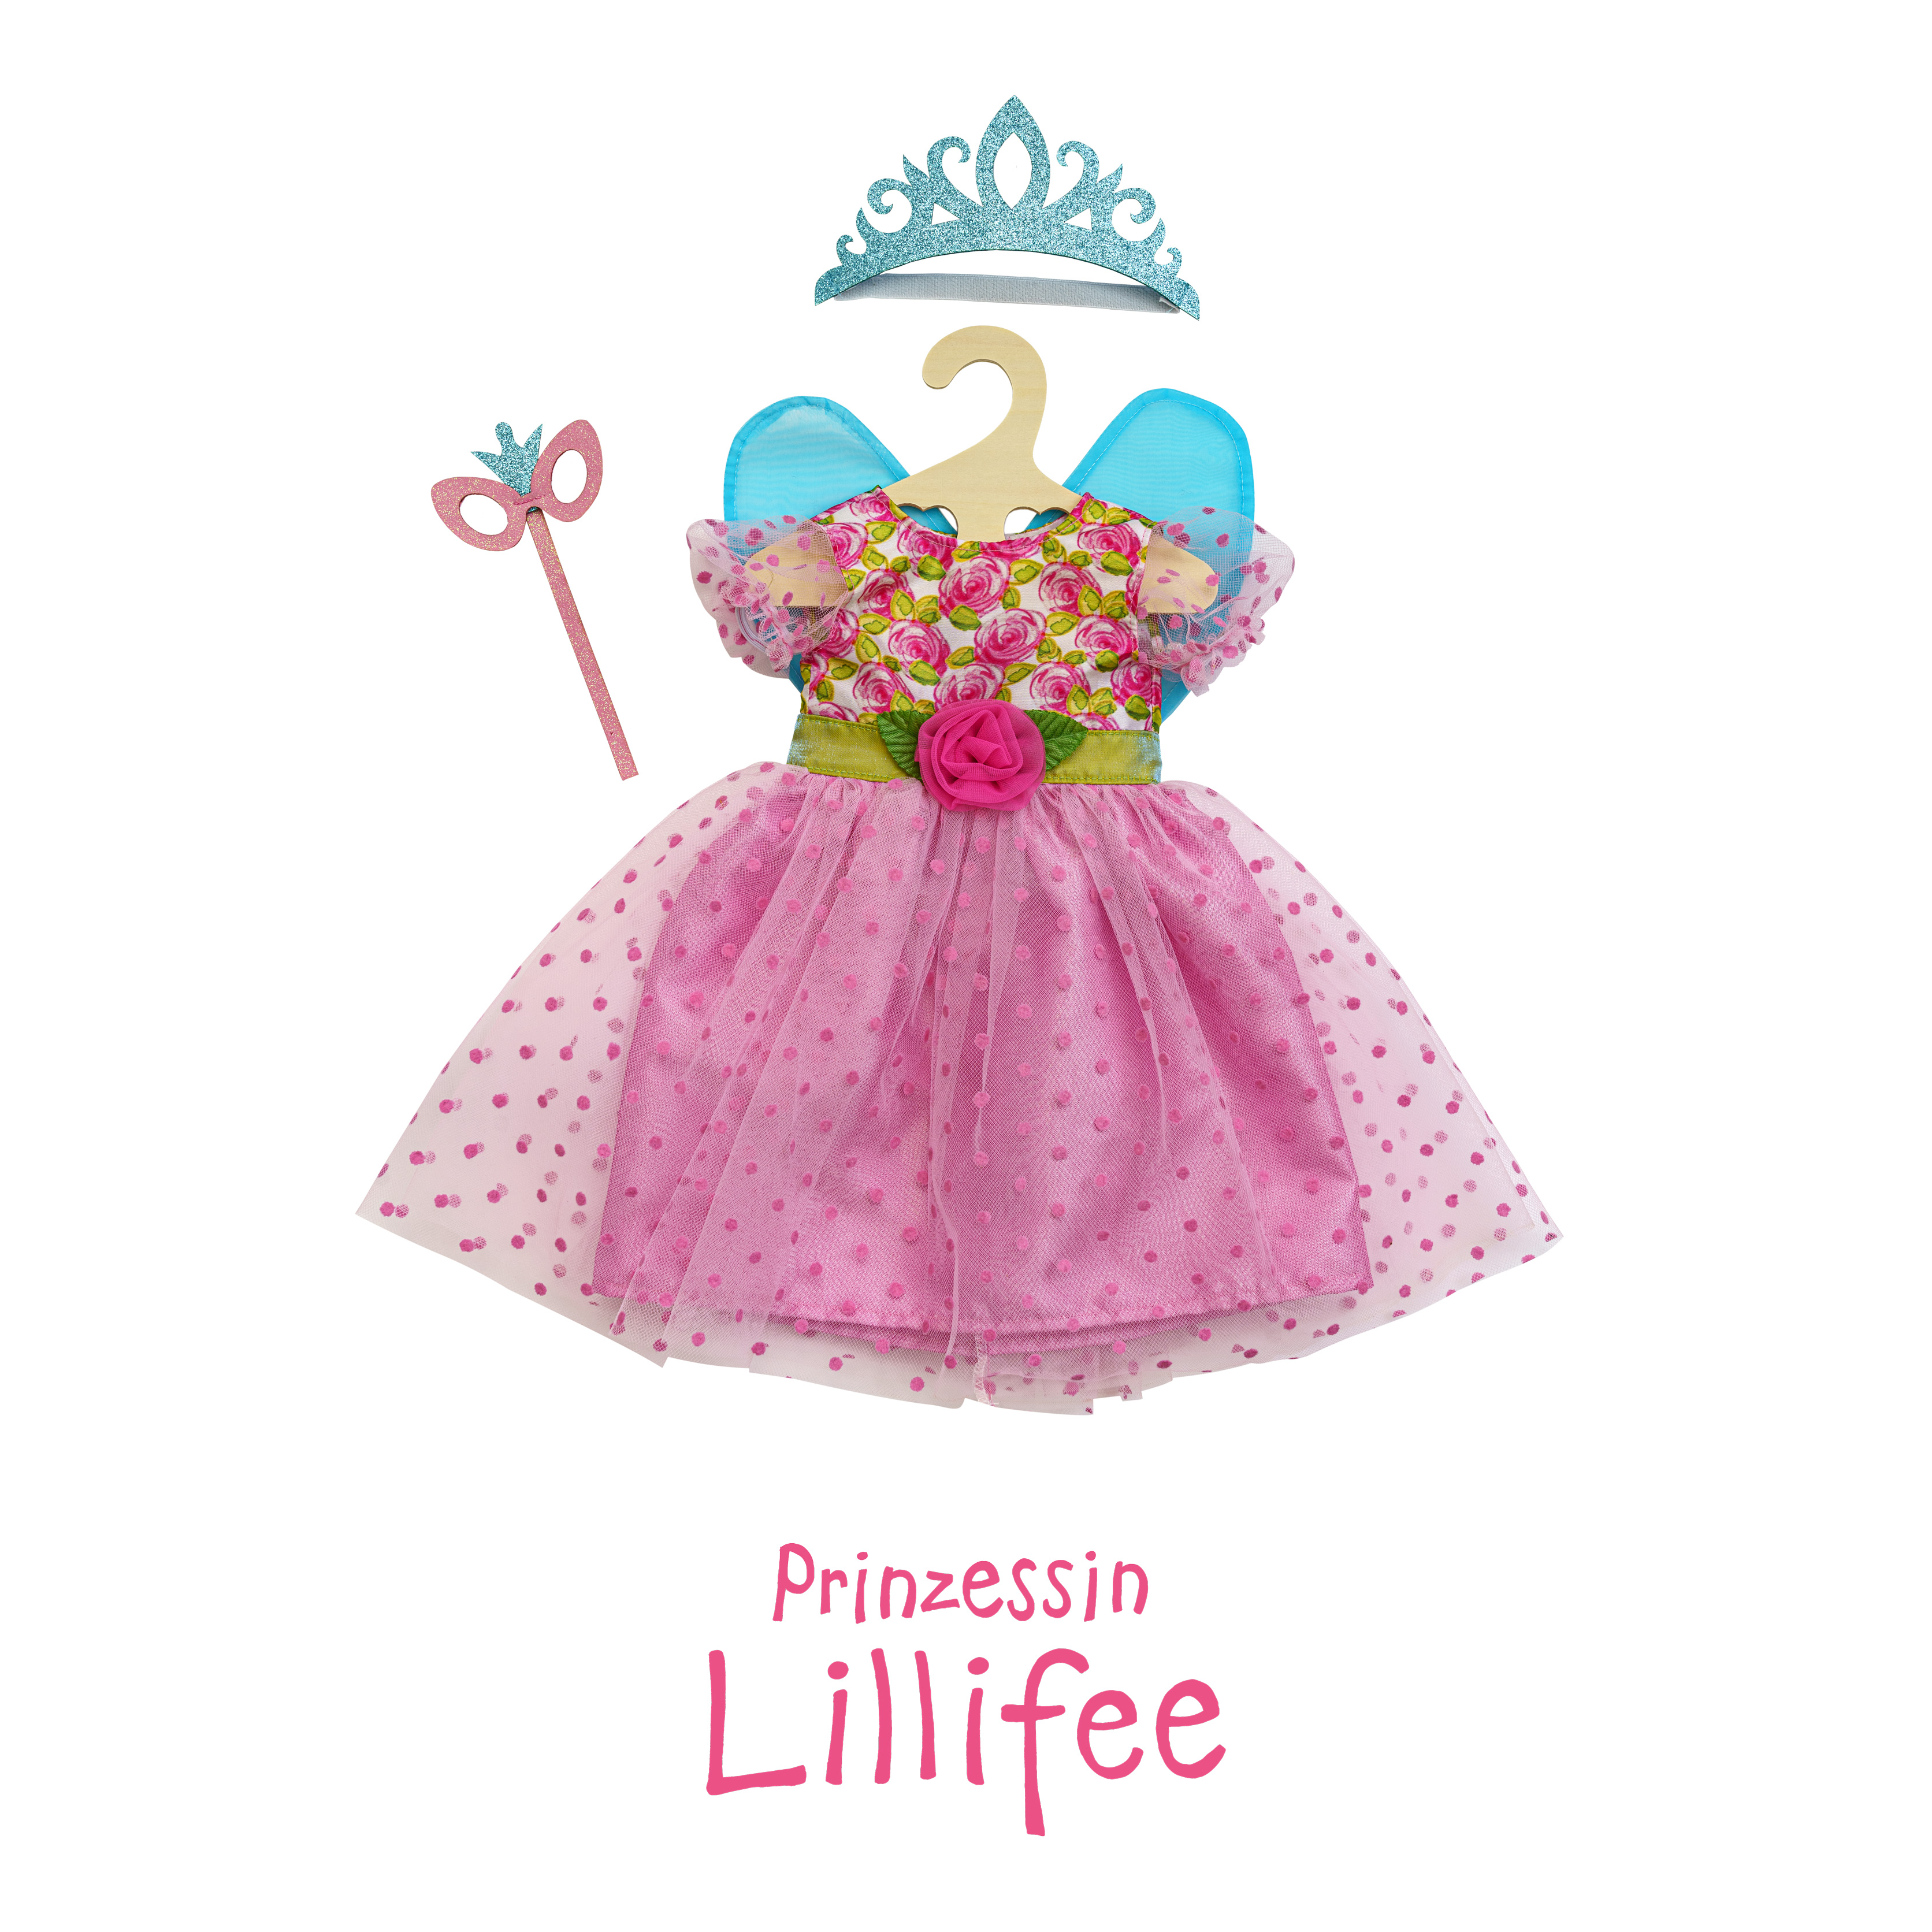 Puppenkleid "Prinzessin Lillifee" mit Glitzerkrone und Augenmaske, 3-teilig, Gr. 35-45 cm